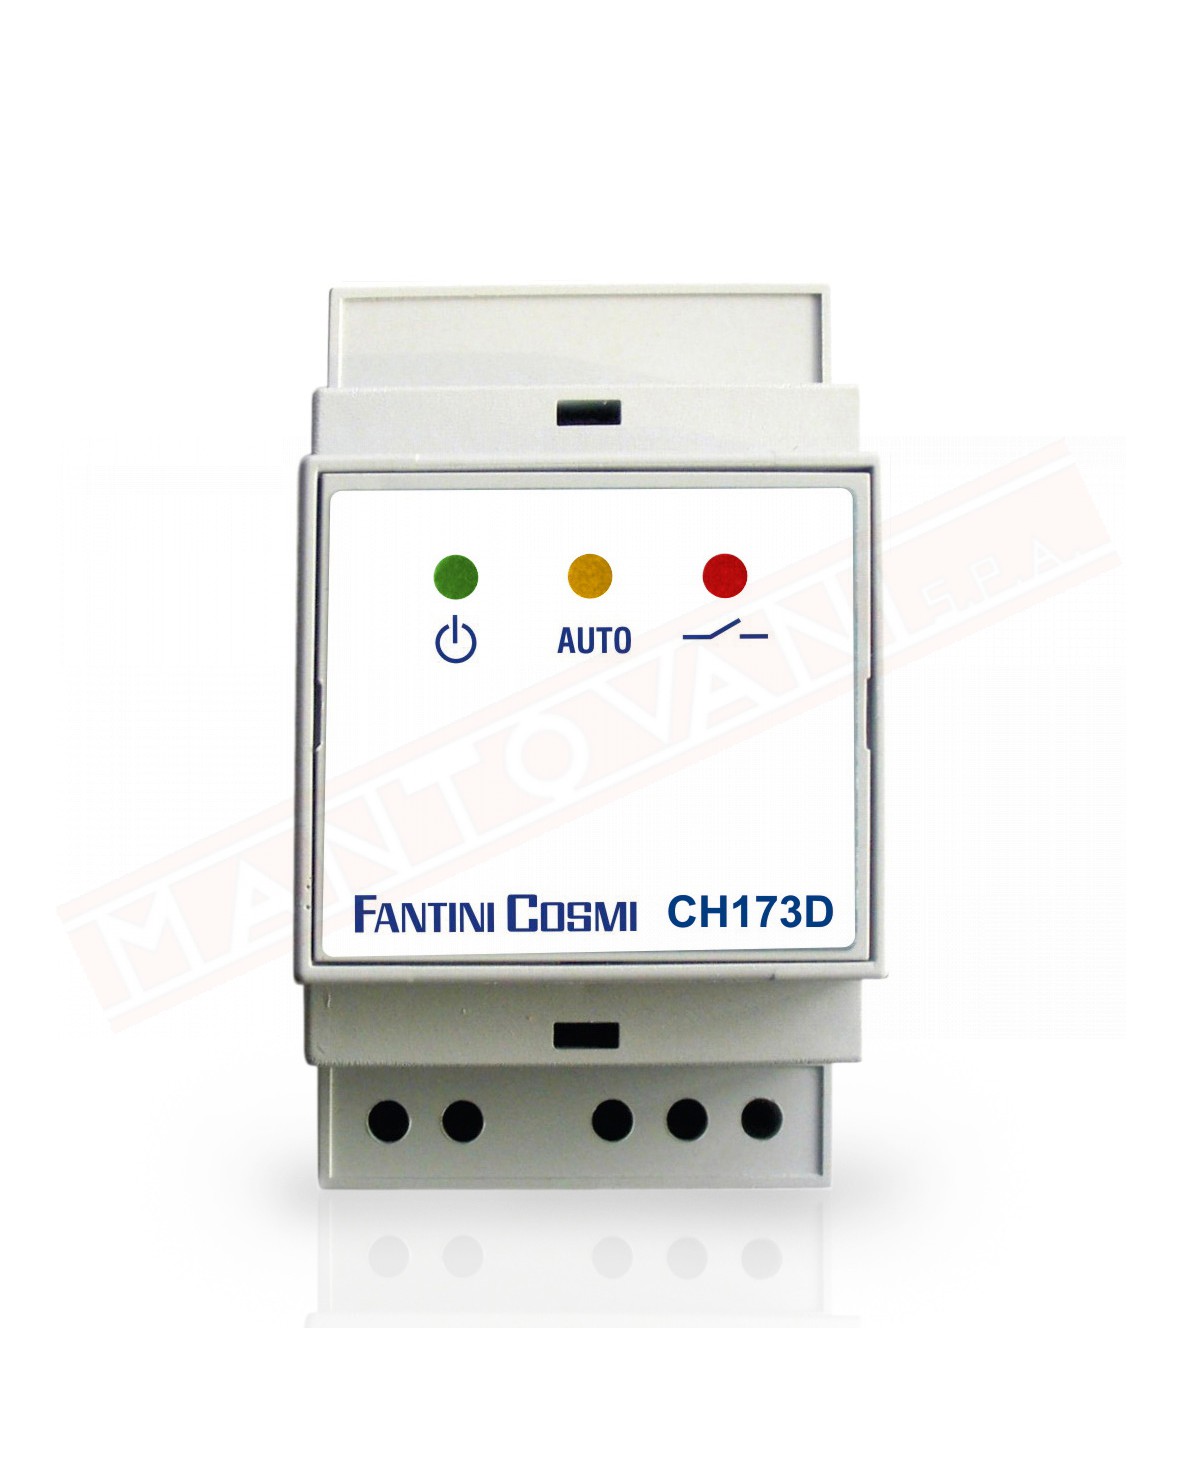 Fantini Cosmi attuatore per termostato CH115RF va installato nei pressi della caldaia e collegato al comando e alla 220v